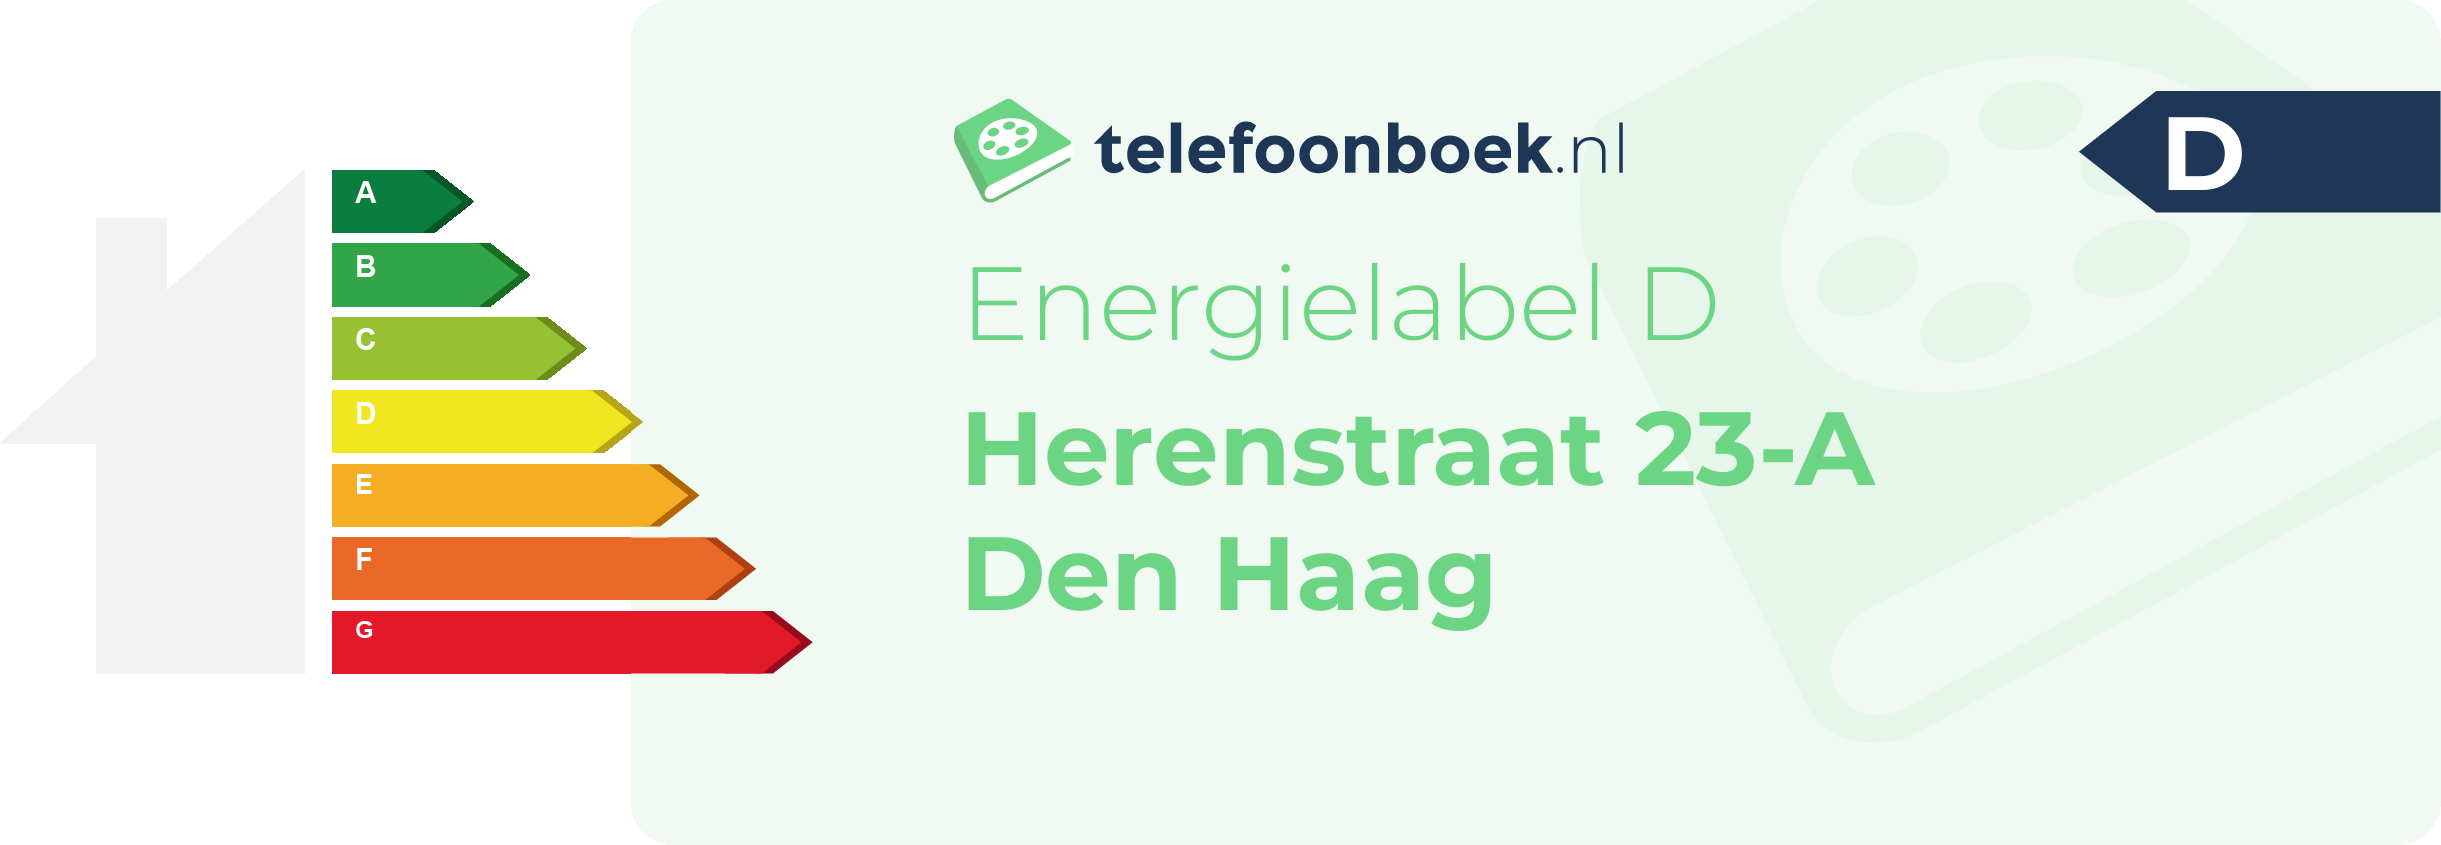 Energielabel Herenstraat 23-A Den Haag